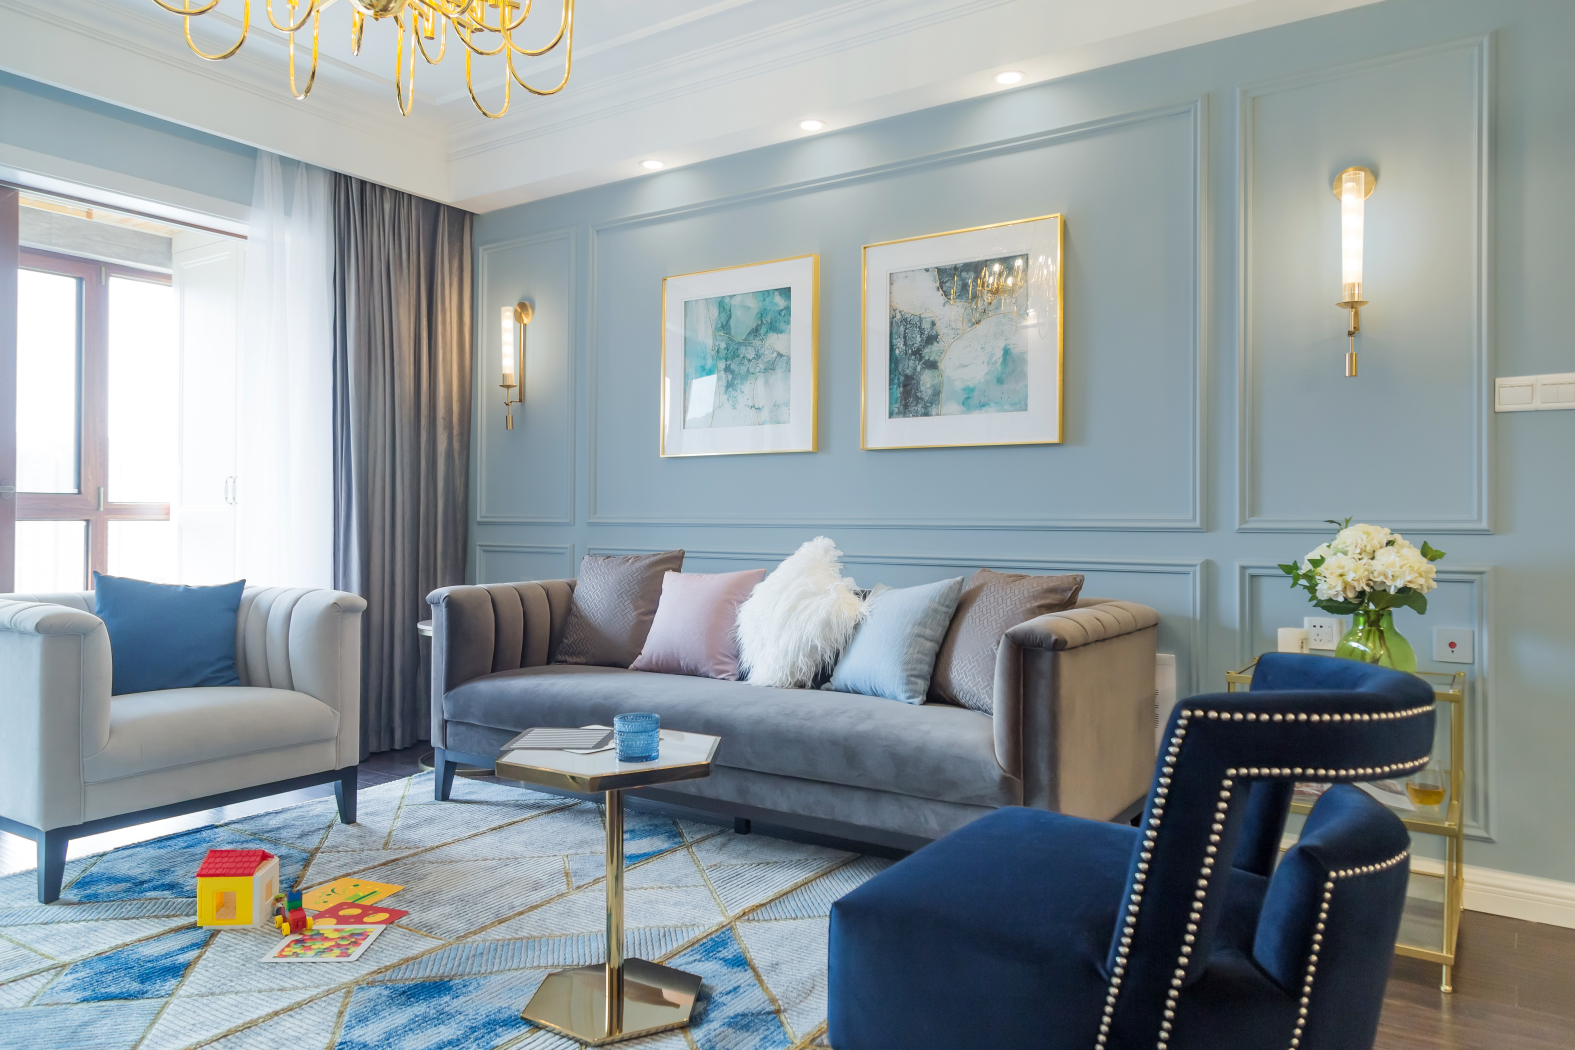 蓝色海洋 - 地中海风格三室两厅装修效果图 - 18328181562设计效果图 - 每平每屋·设计家